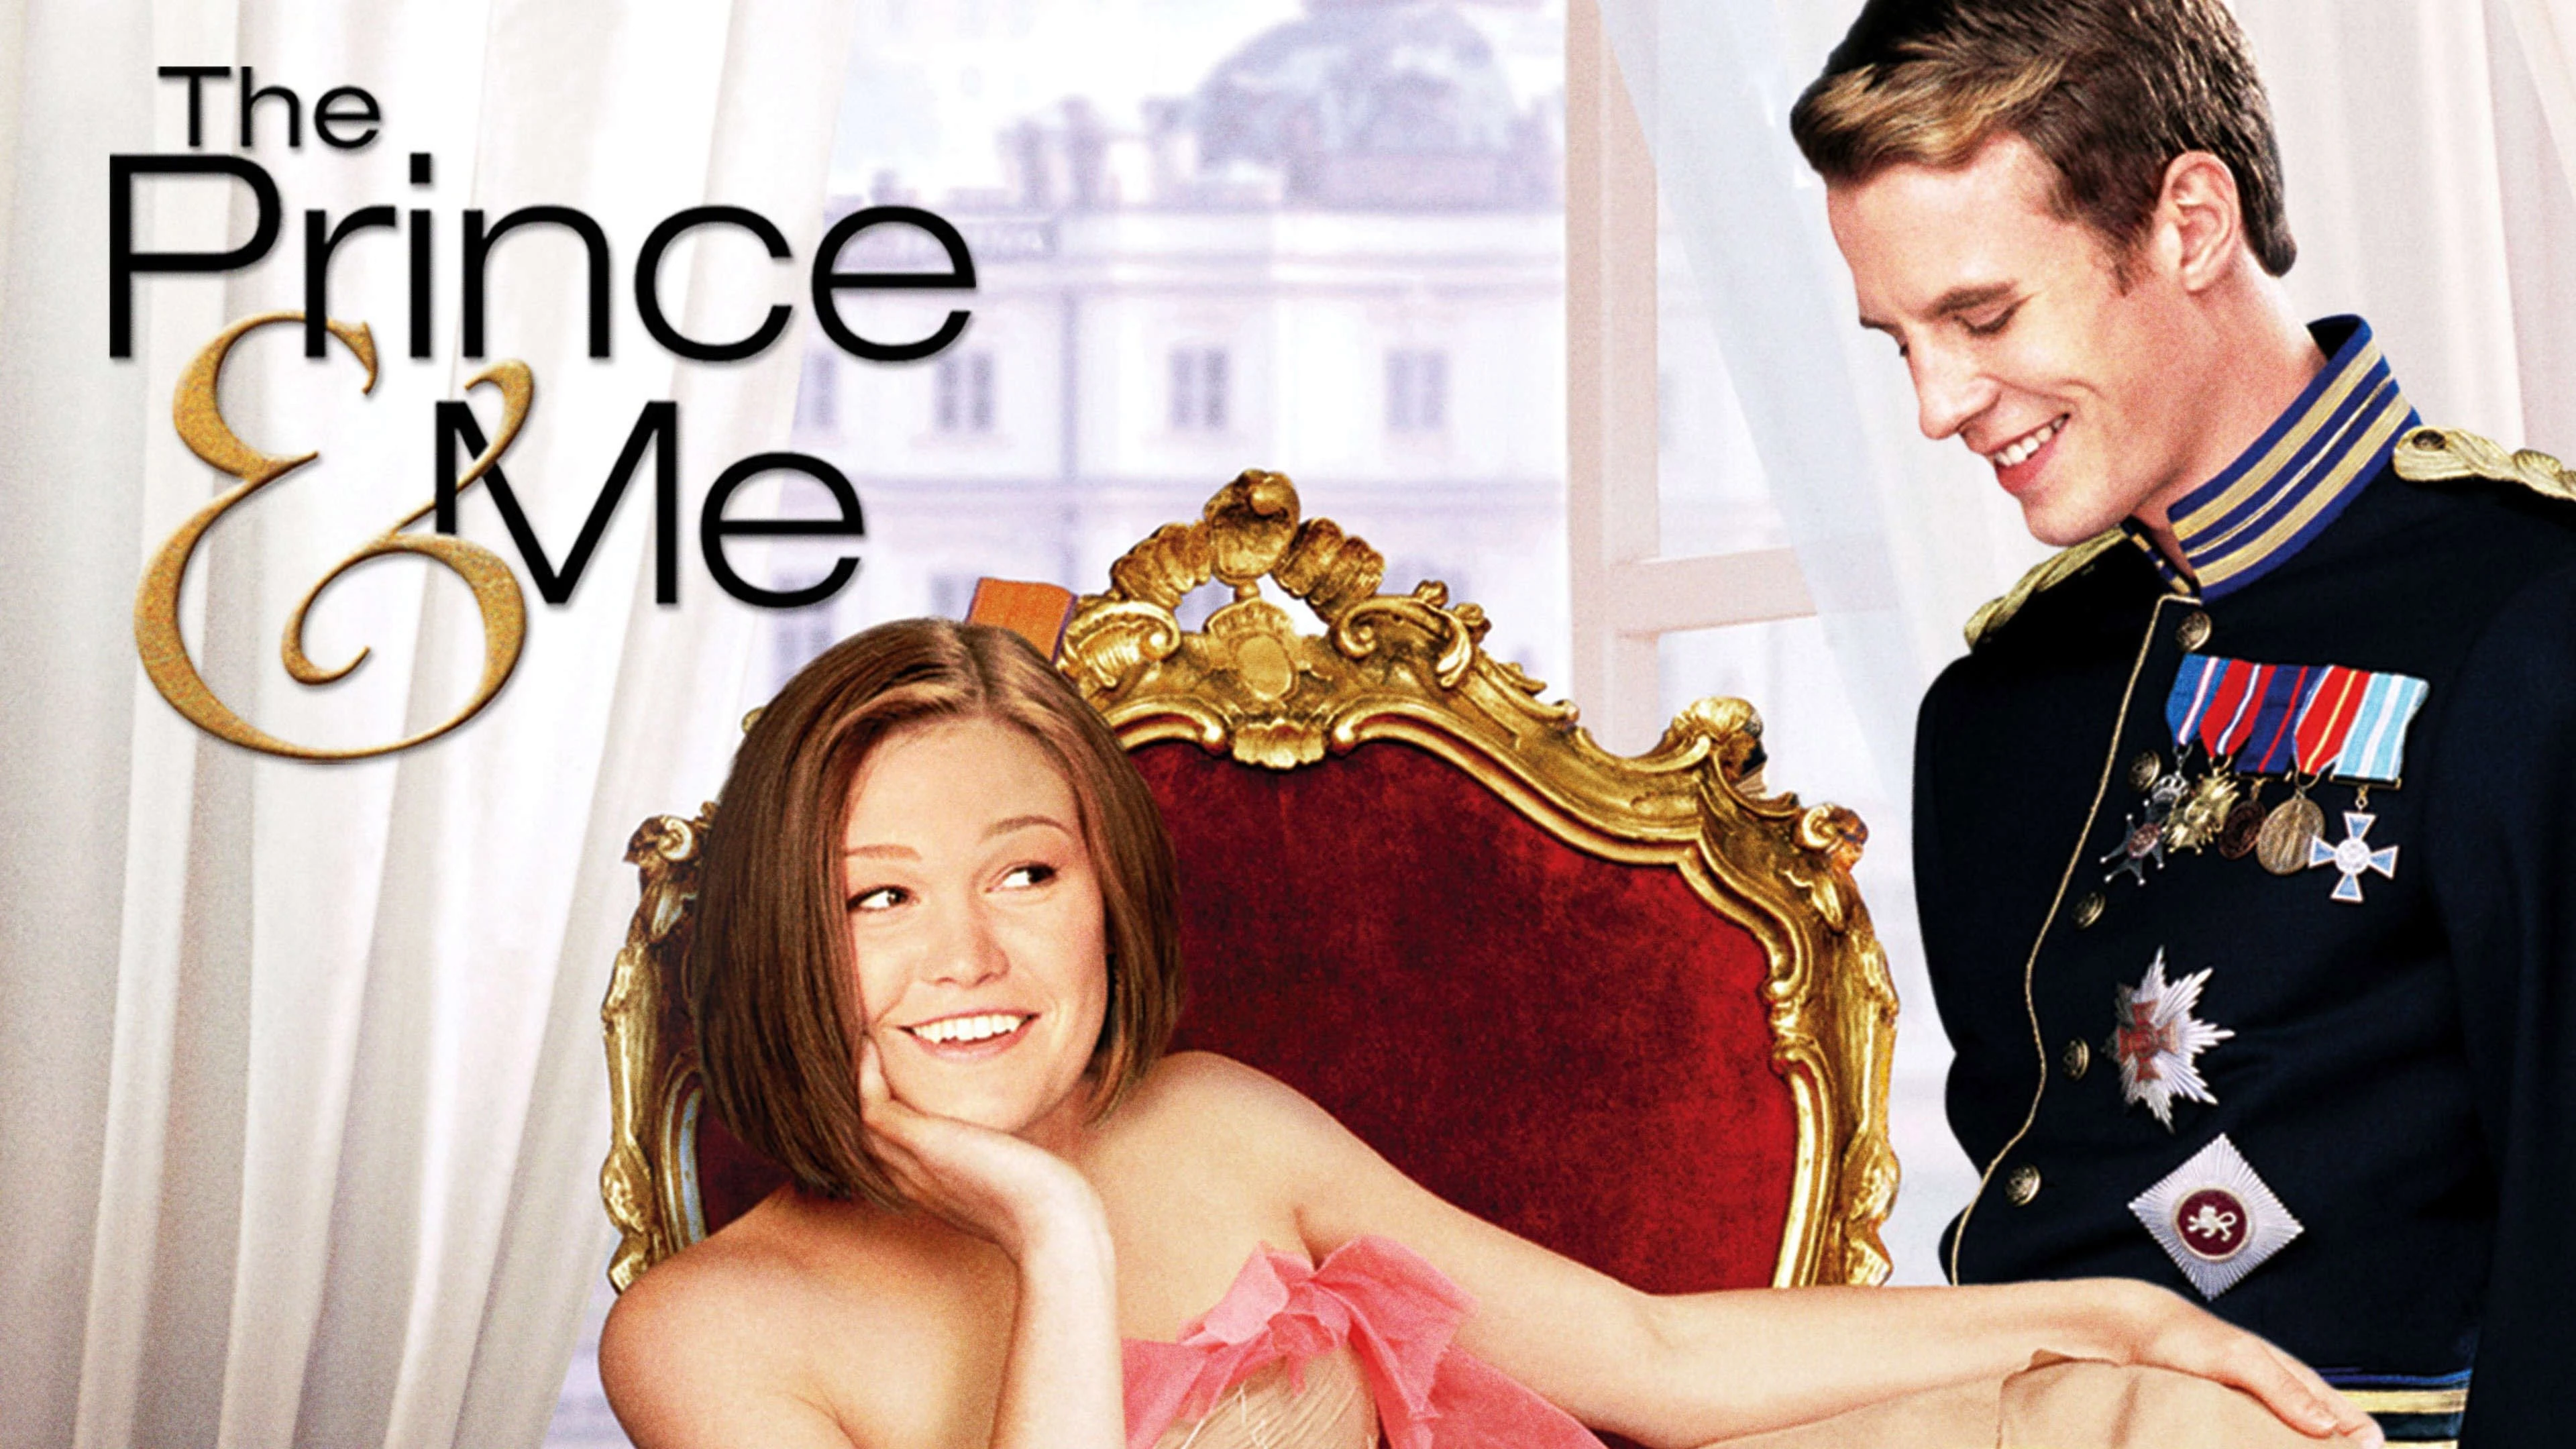 movies like Princess Diaries - "The Prince & Me" (2004)